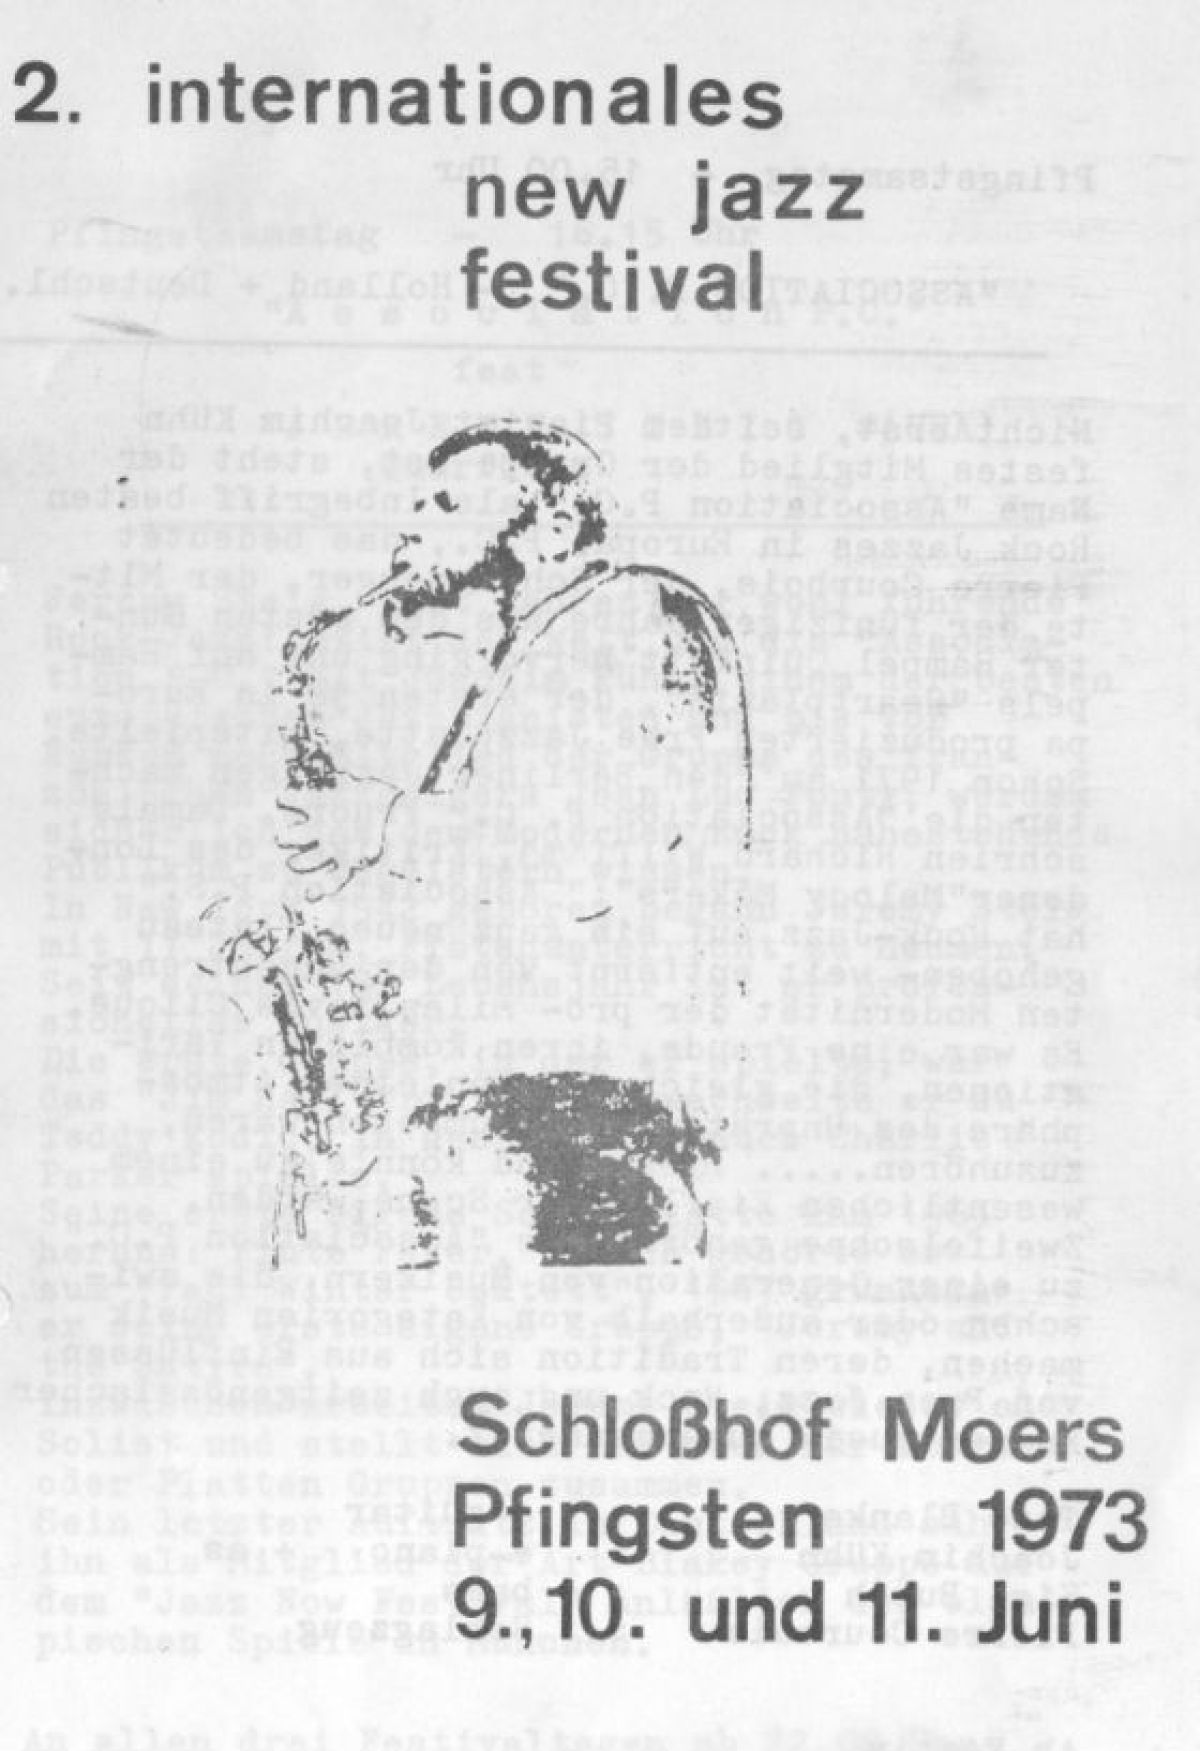 Festival-Plakat 1973